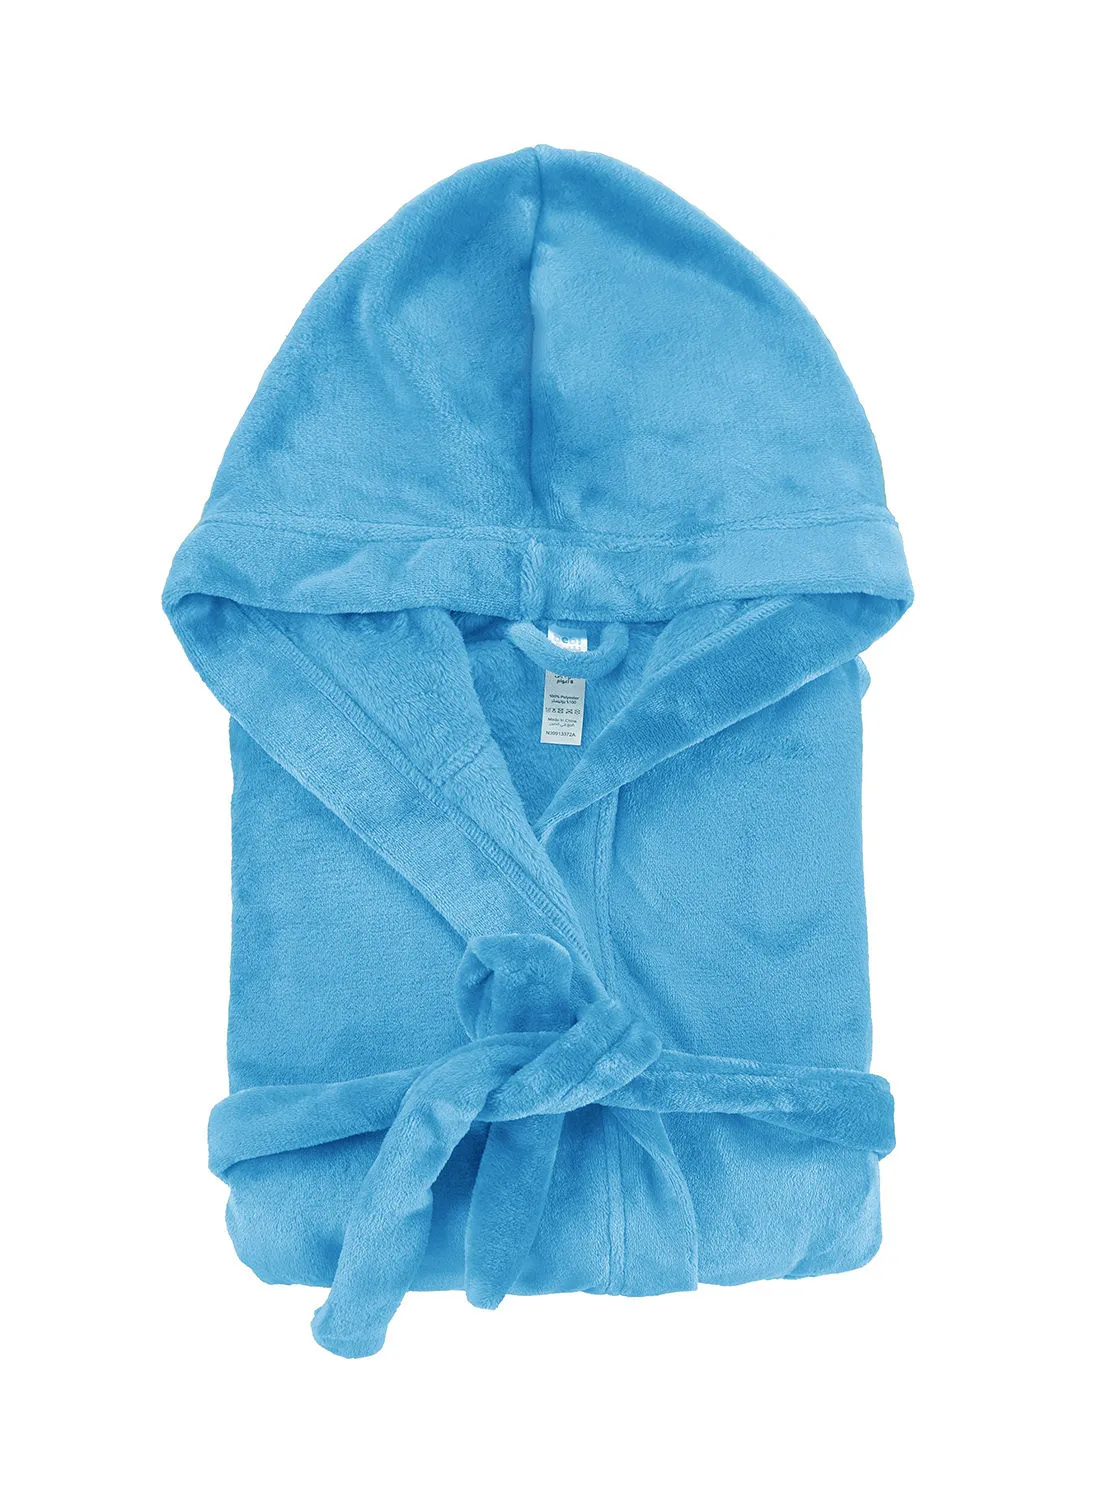 Bebi Bebi Kids Bathroom Towel Set - 255 GSM 100% Cotton - Blue Color - Lightweight - Kids Hooded Comfortable - For Girls & Boys - 1 Piece